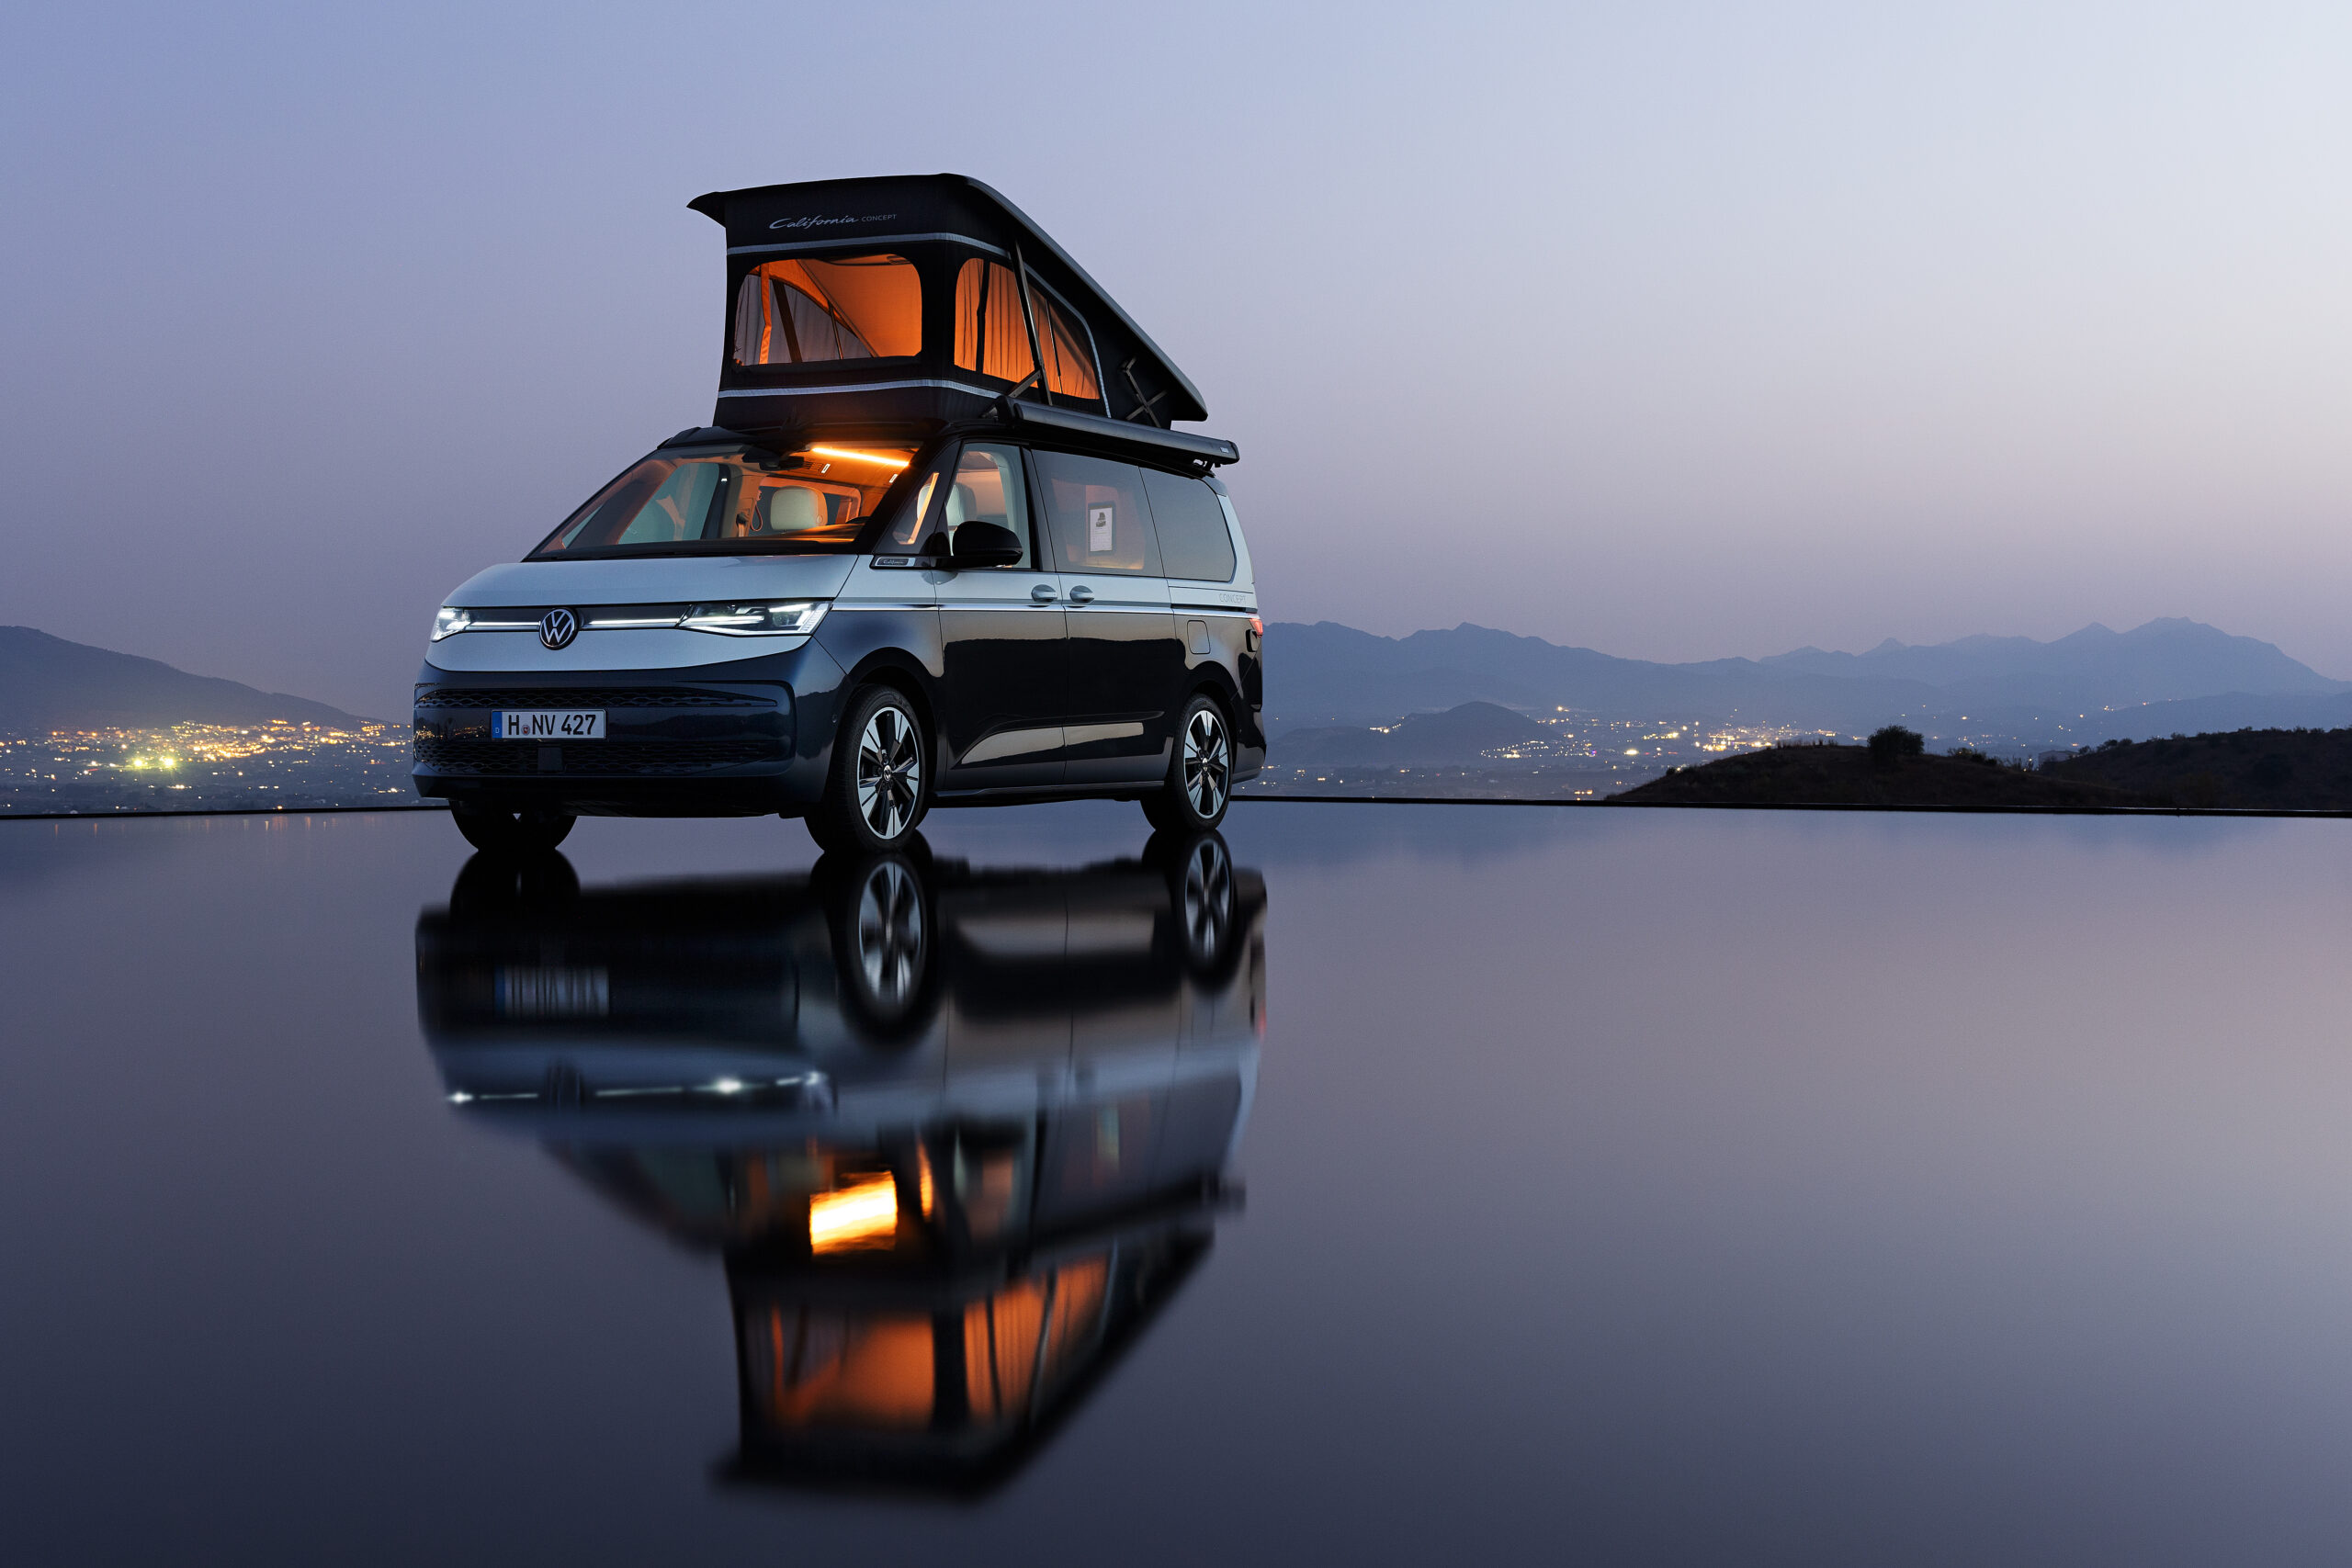 Volkswagen Vehículos Comerciales presenta en primicia mundial un vehículo conceptual, el California CONCEPT